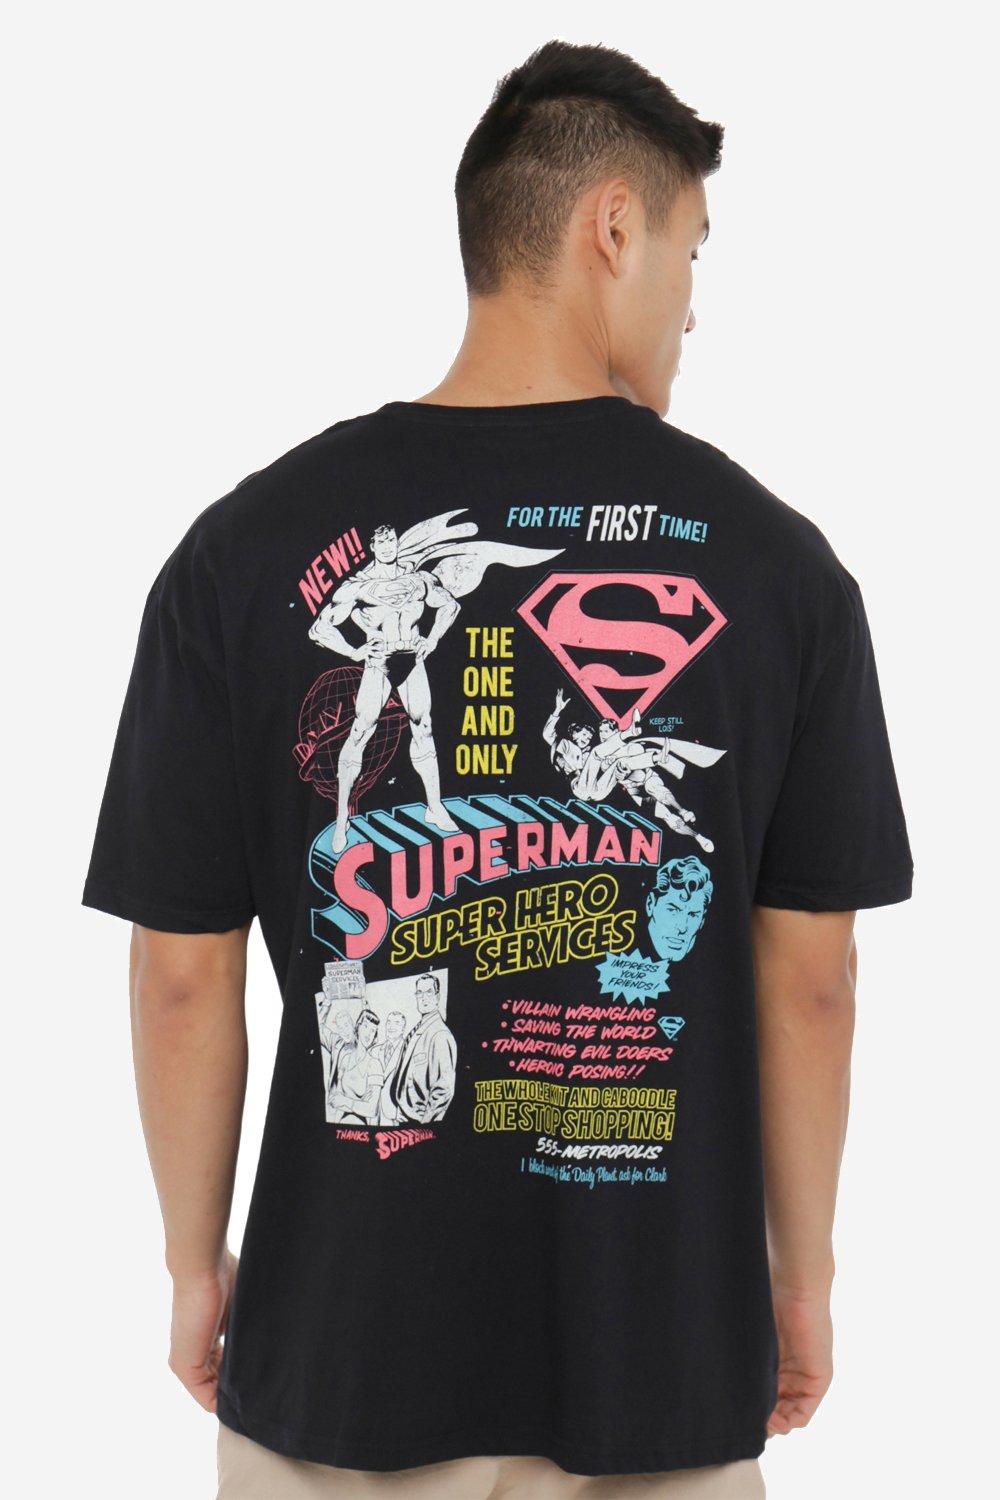 Мужская футболка Superman Super Hero Services DC Comics, черный фигурка утка tubbz dc comics – супермен 9 см